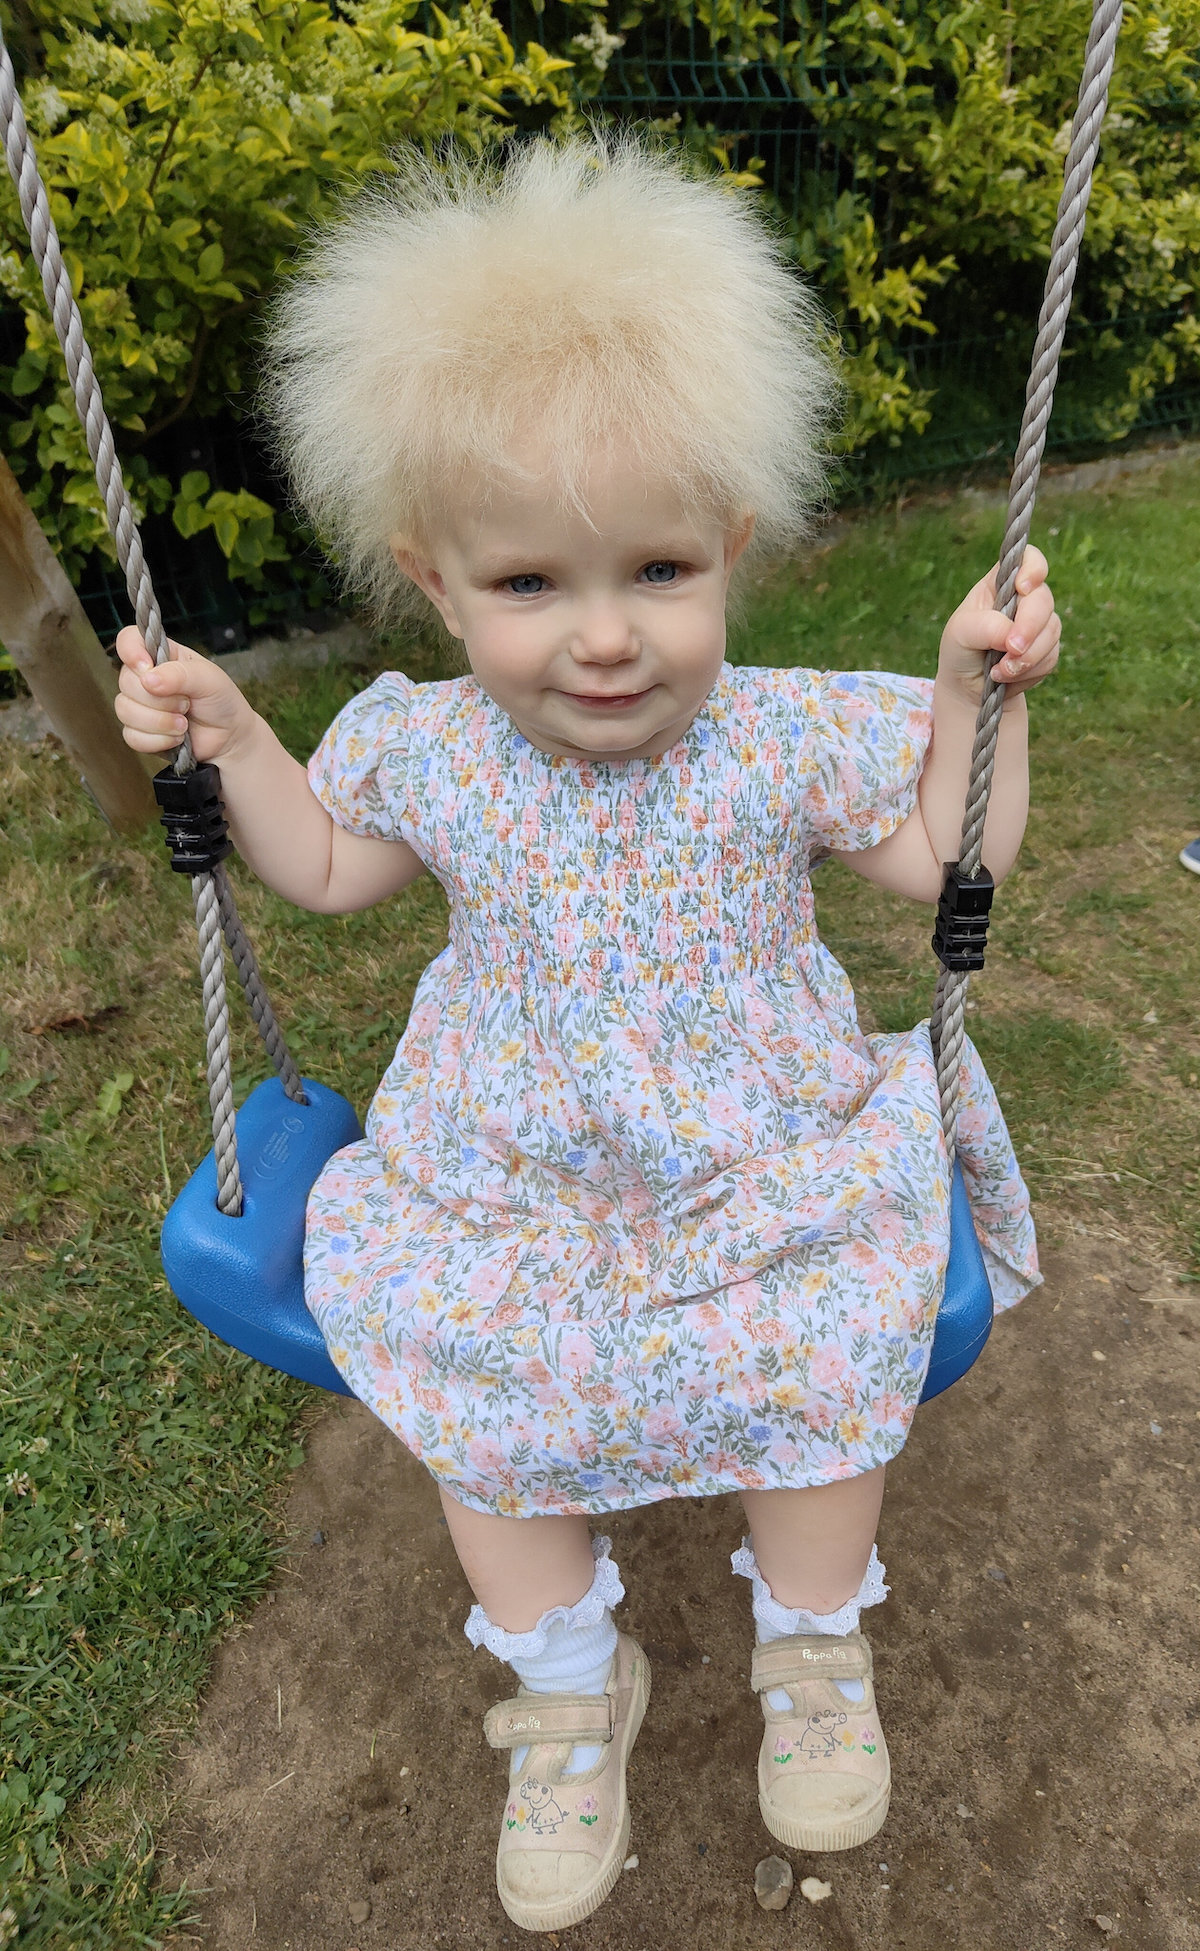 Layla Davis on a swing.